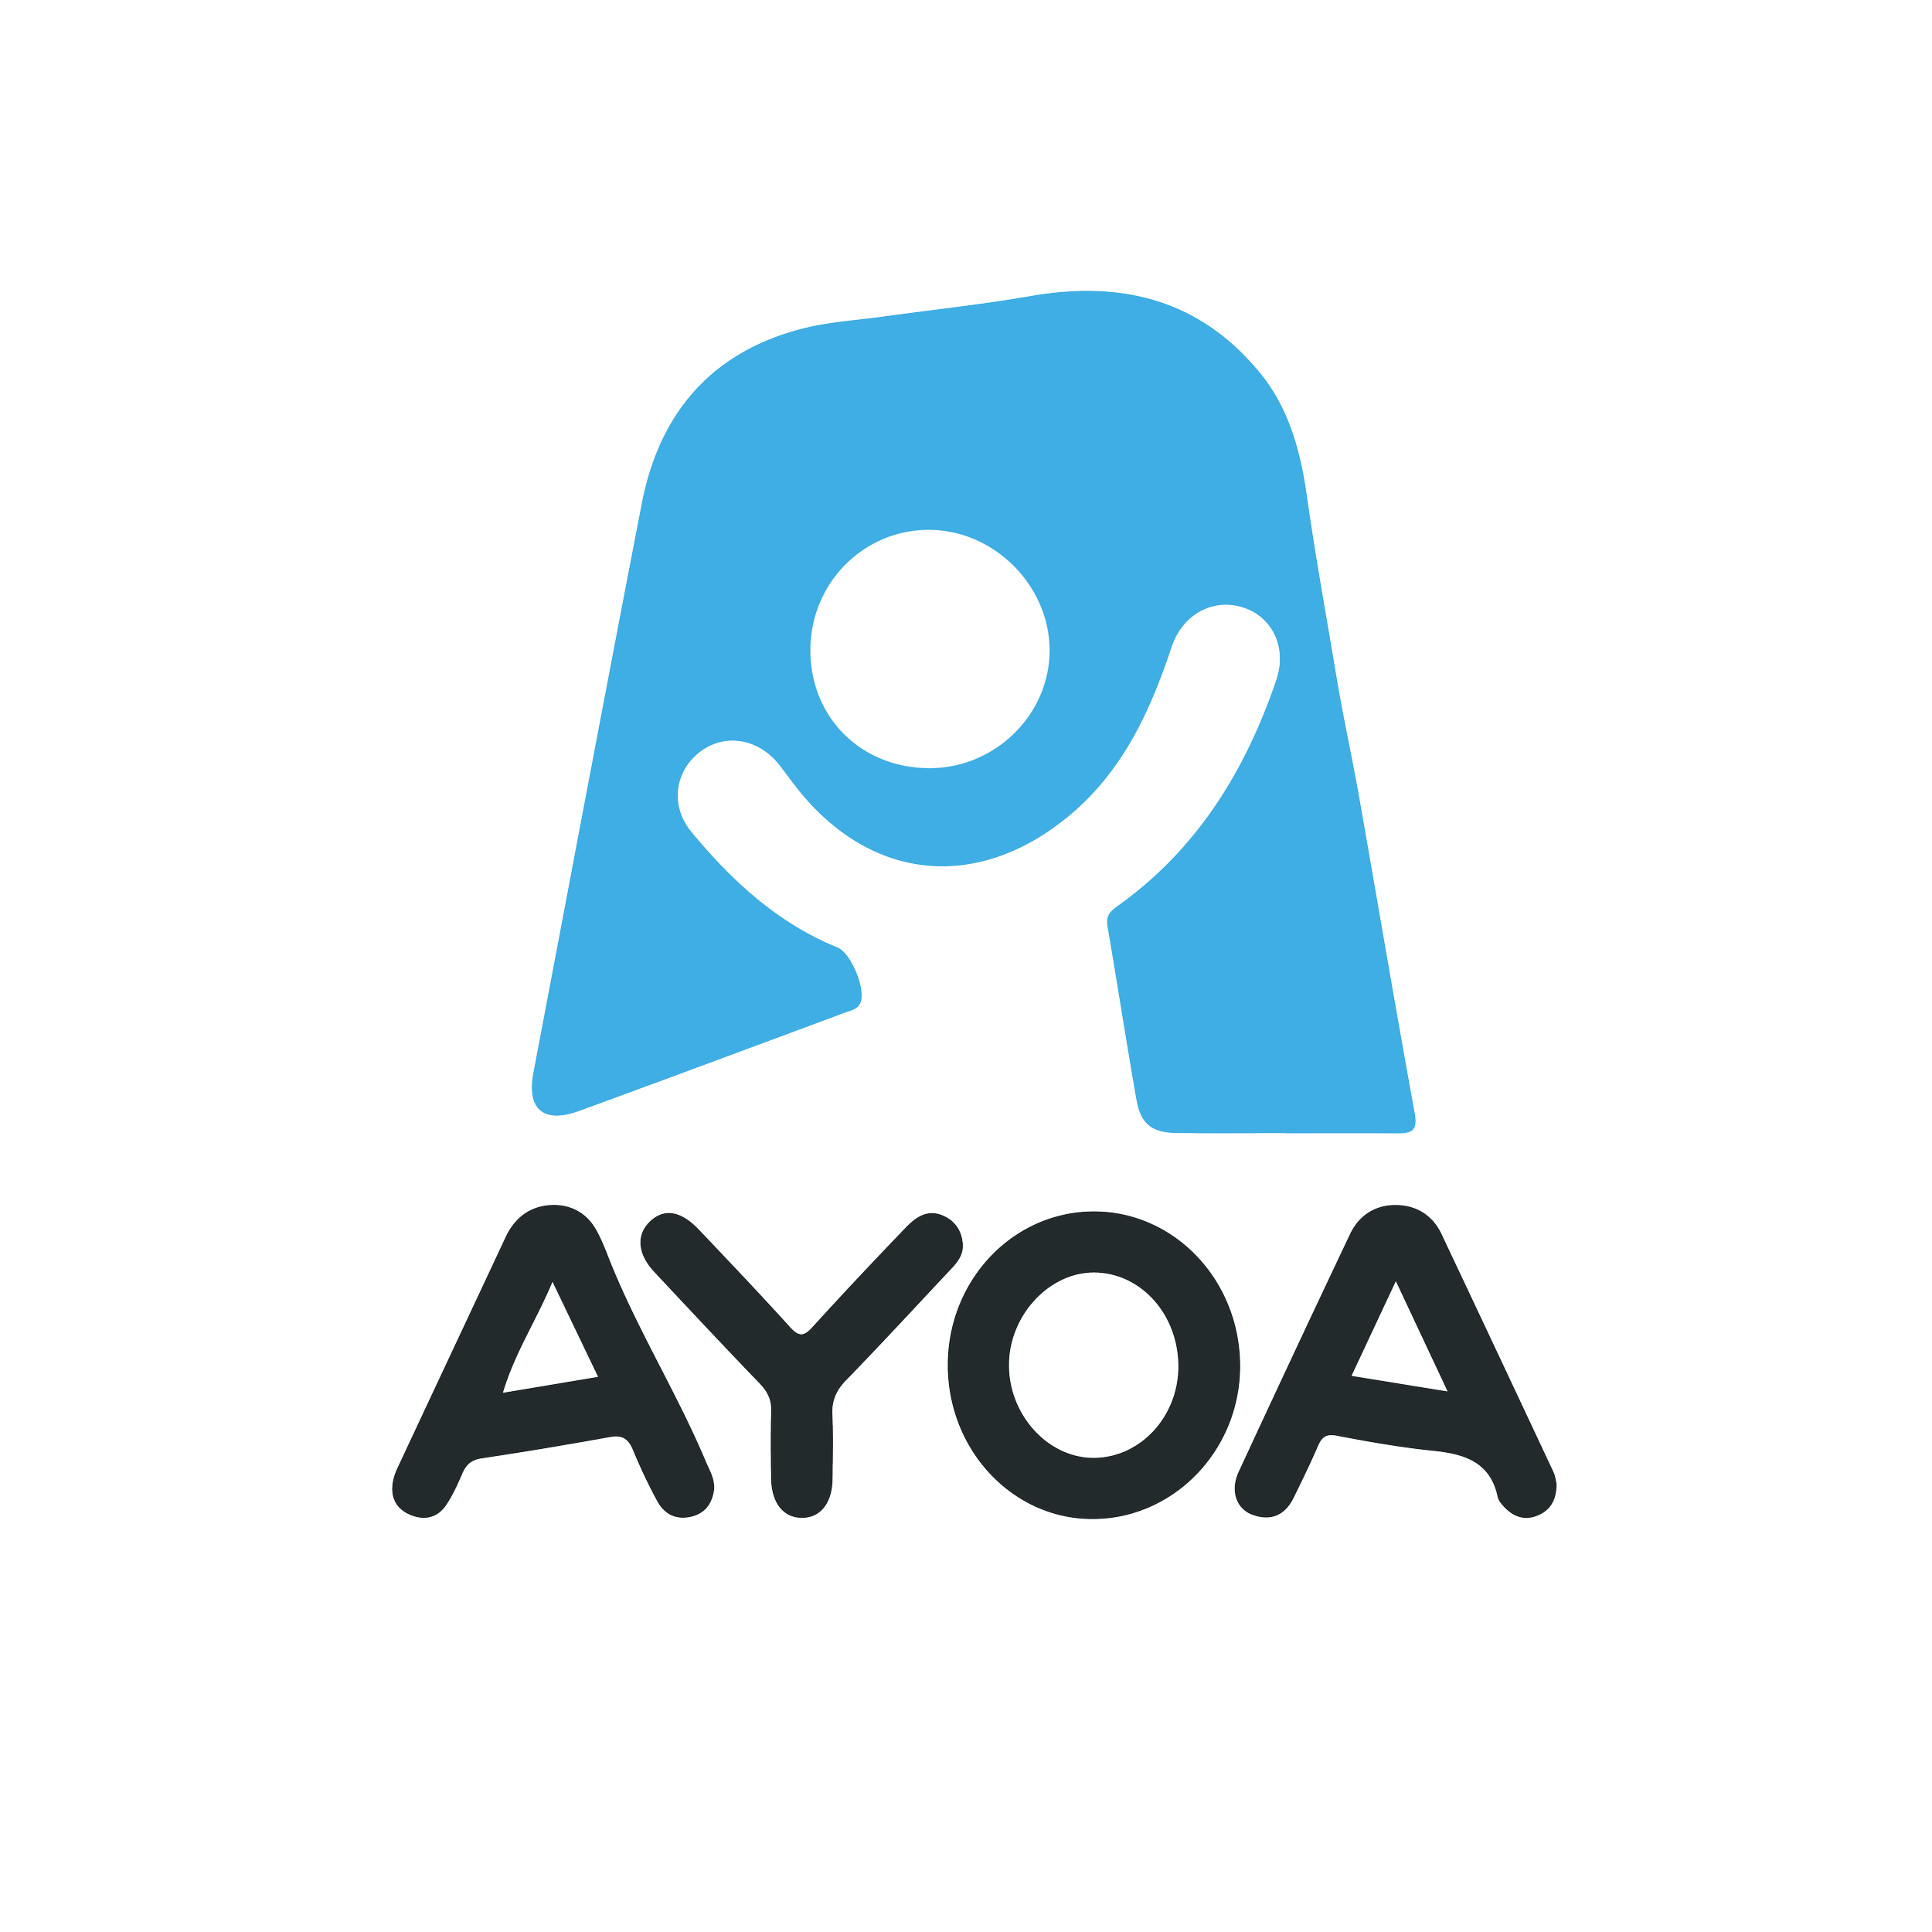 AYOA-01.png